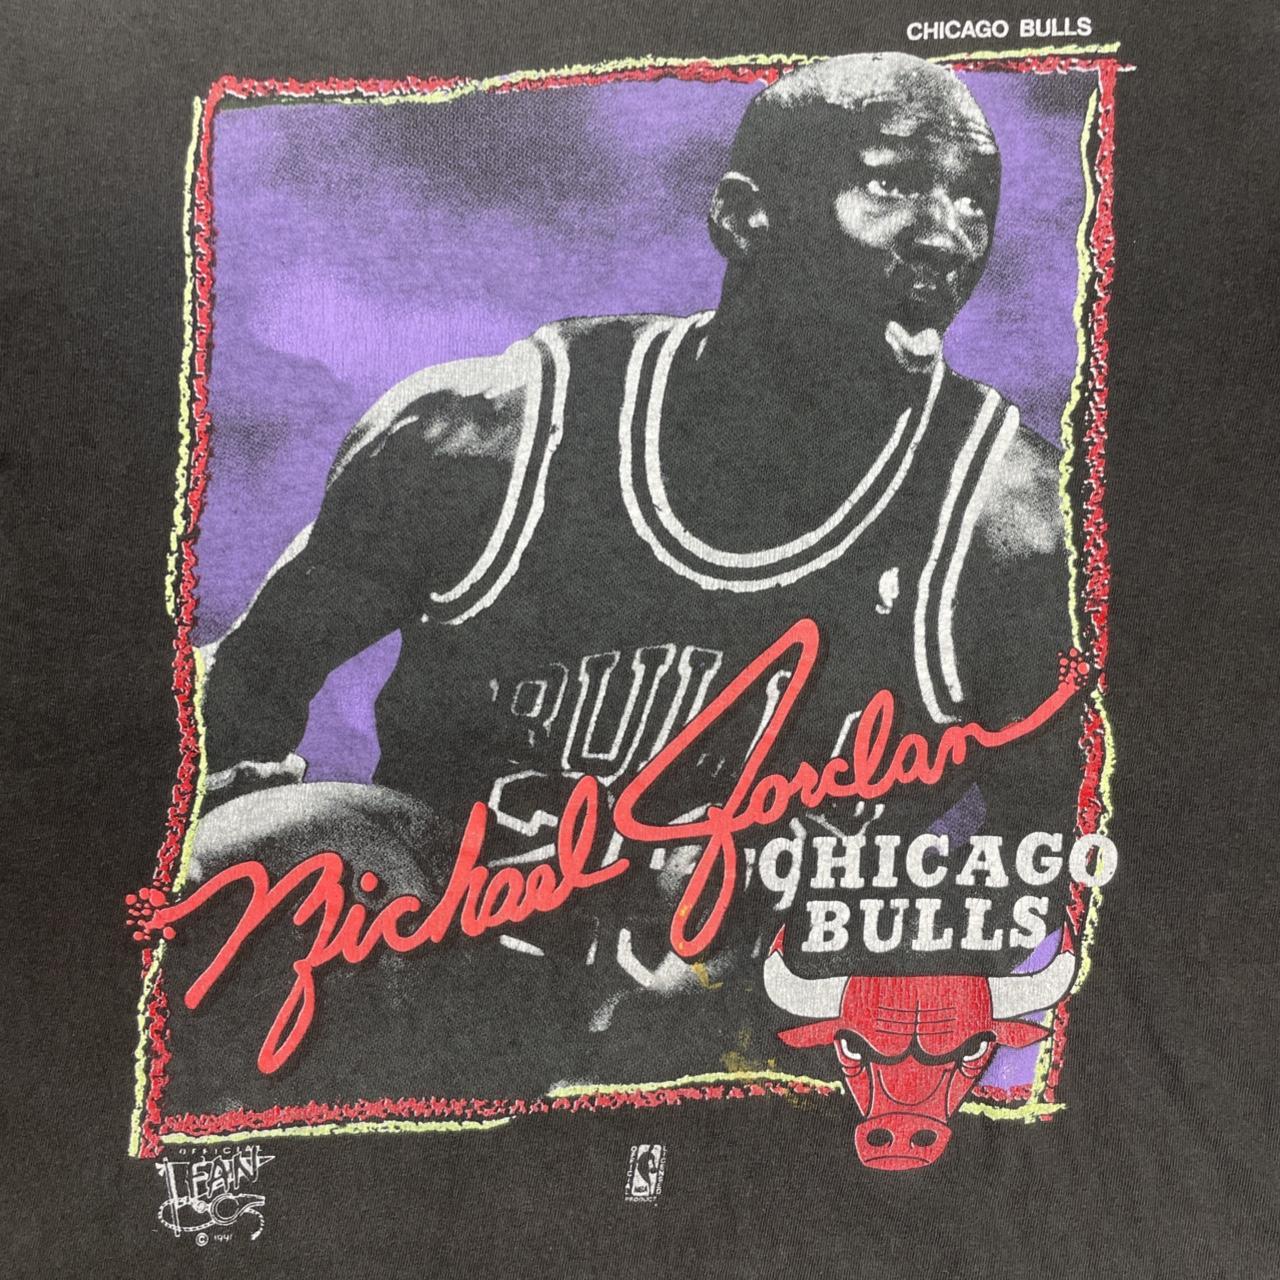 Vintage y2k Chicago Bulls Pinstripe Jersey Micheal - Depop